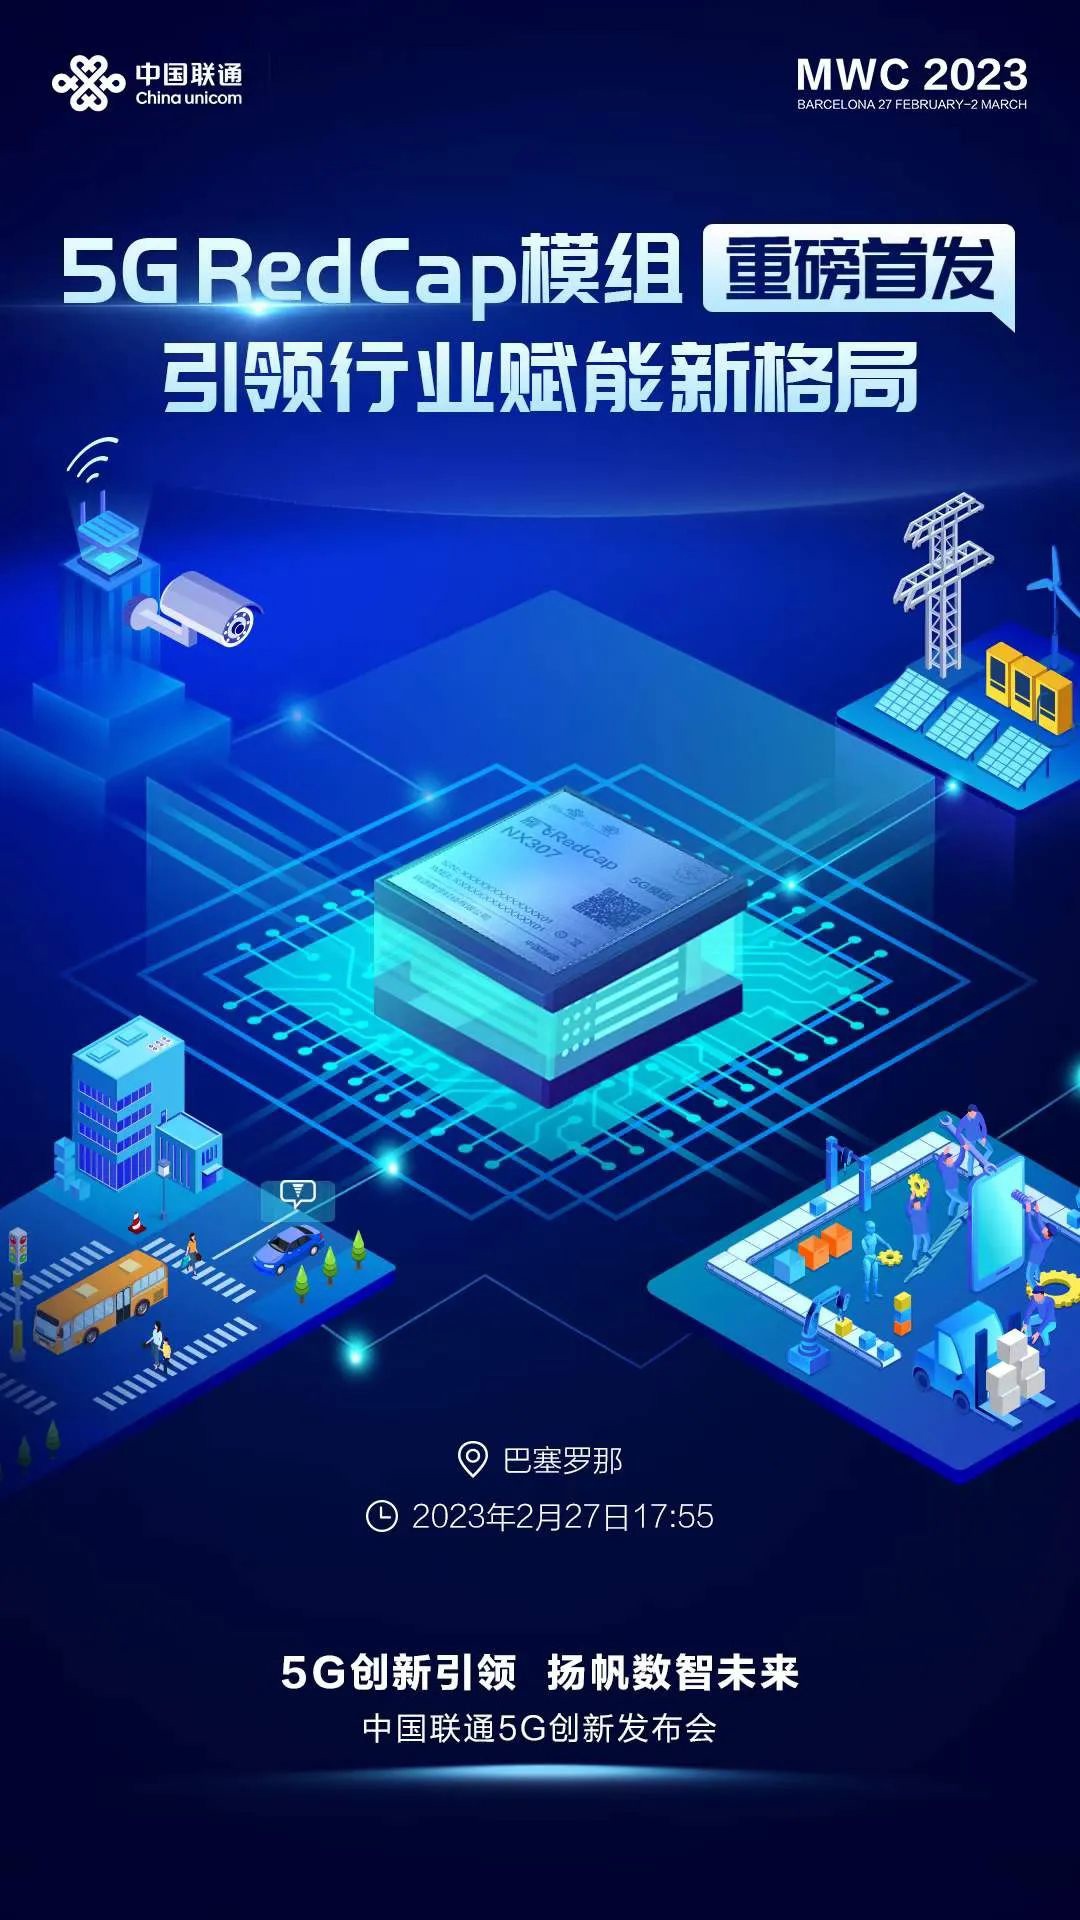 中国联通将于 MWC 2023 发布全球首款“5G Redcap 商用模组”